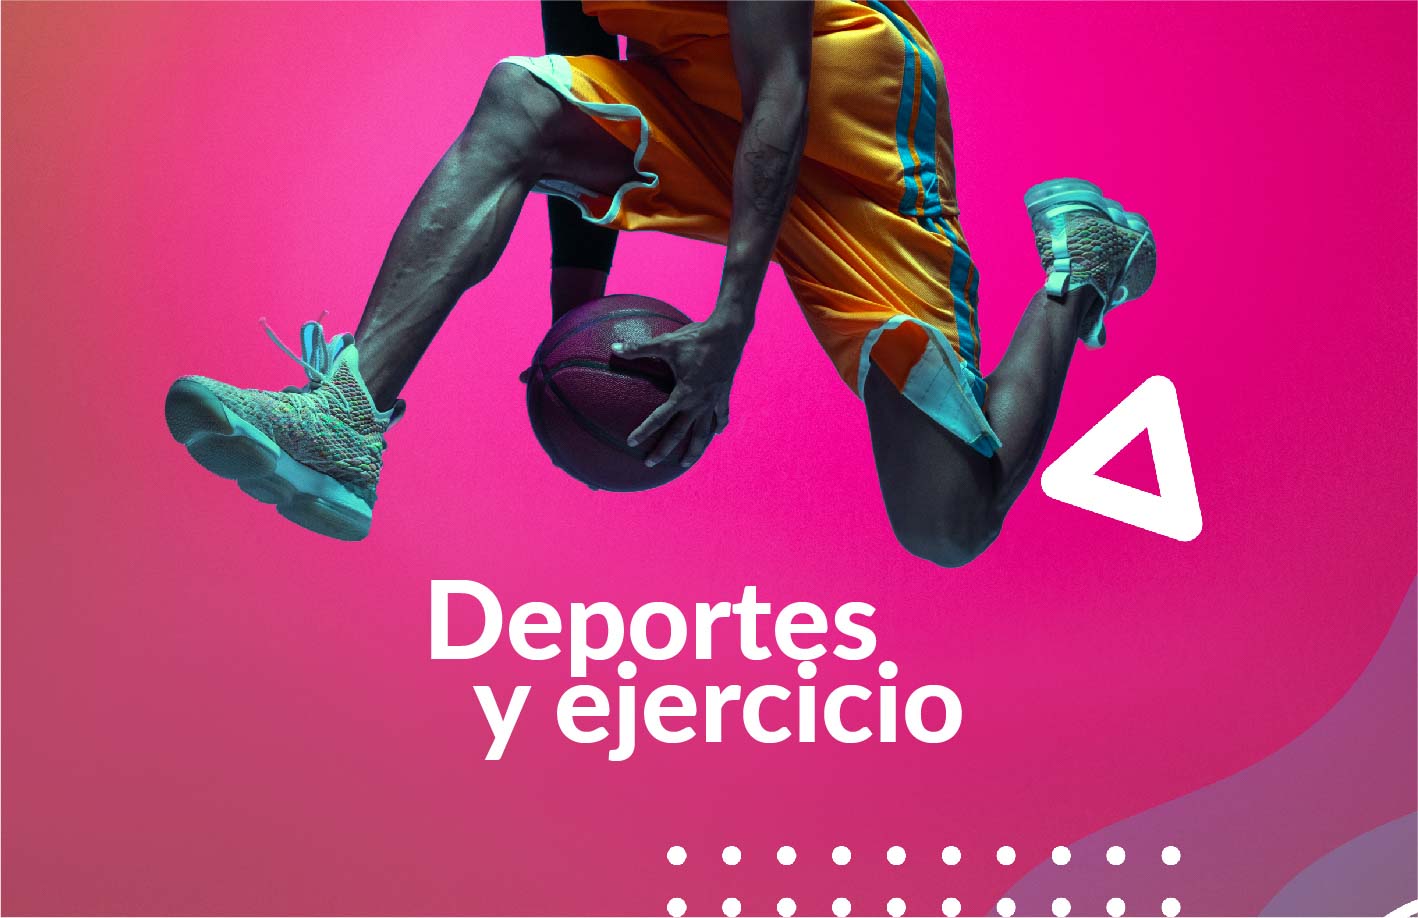 deporte y ejercicio colombia